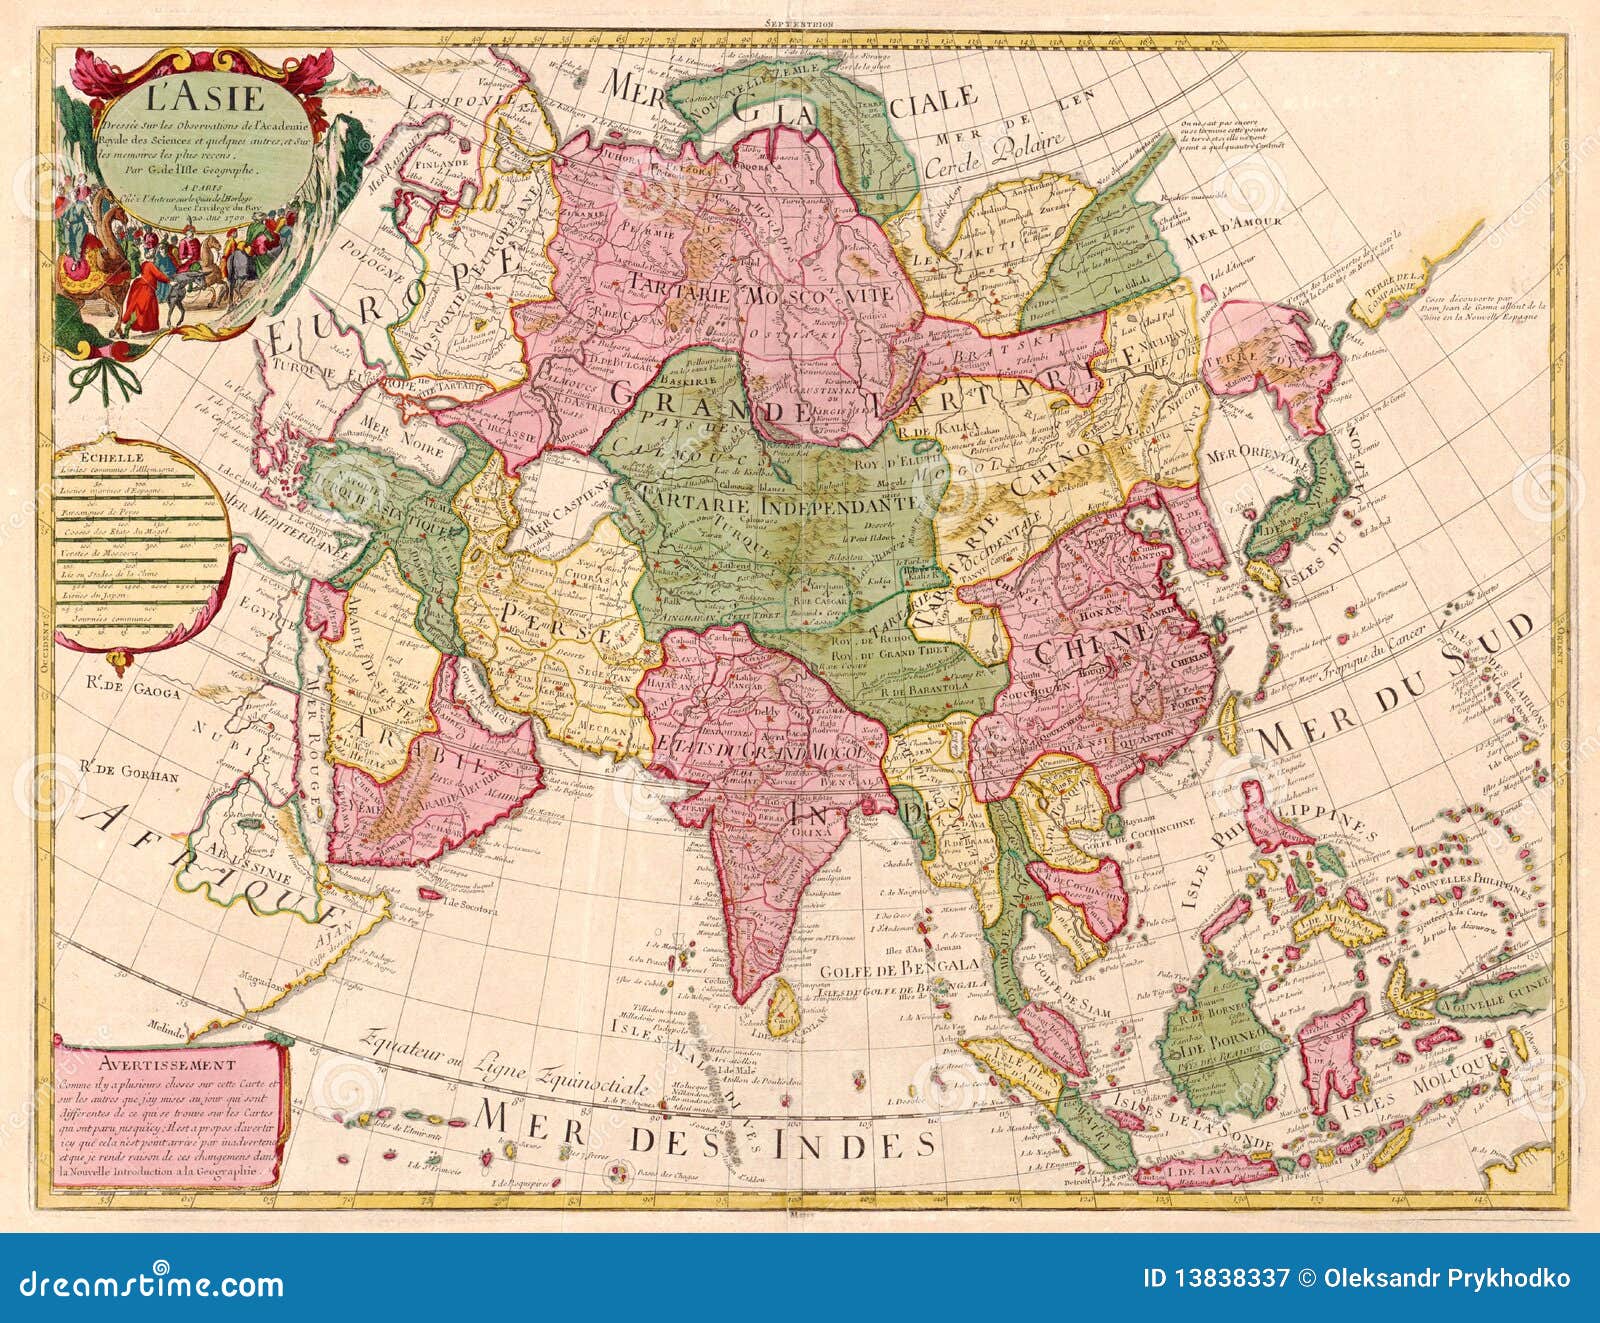 Mkl7 Politische Übersicht Alte historische Landkarte 1908: Asien Besitzungen